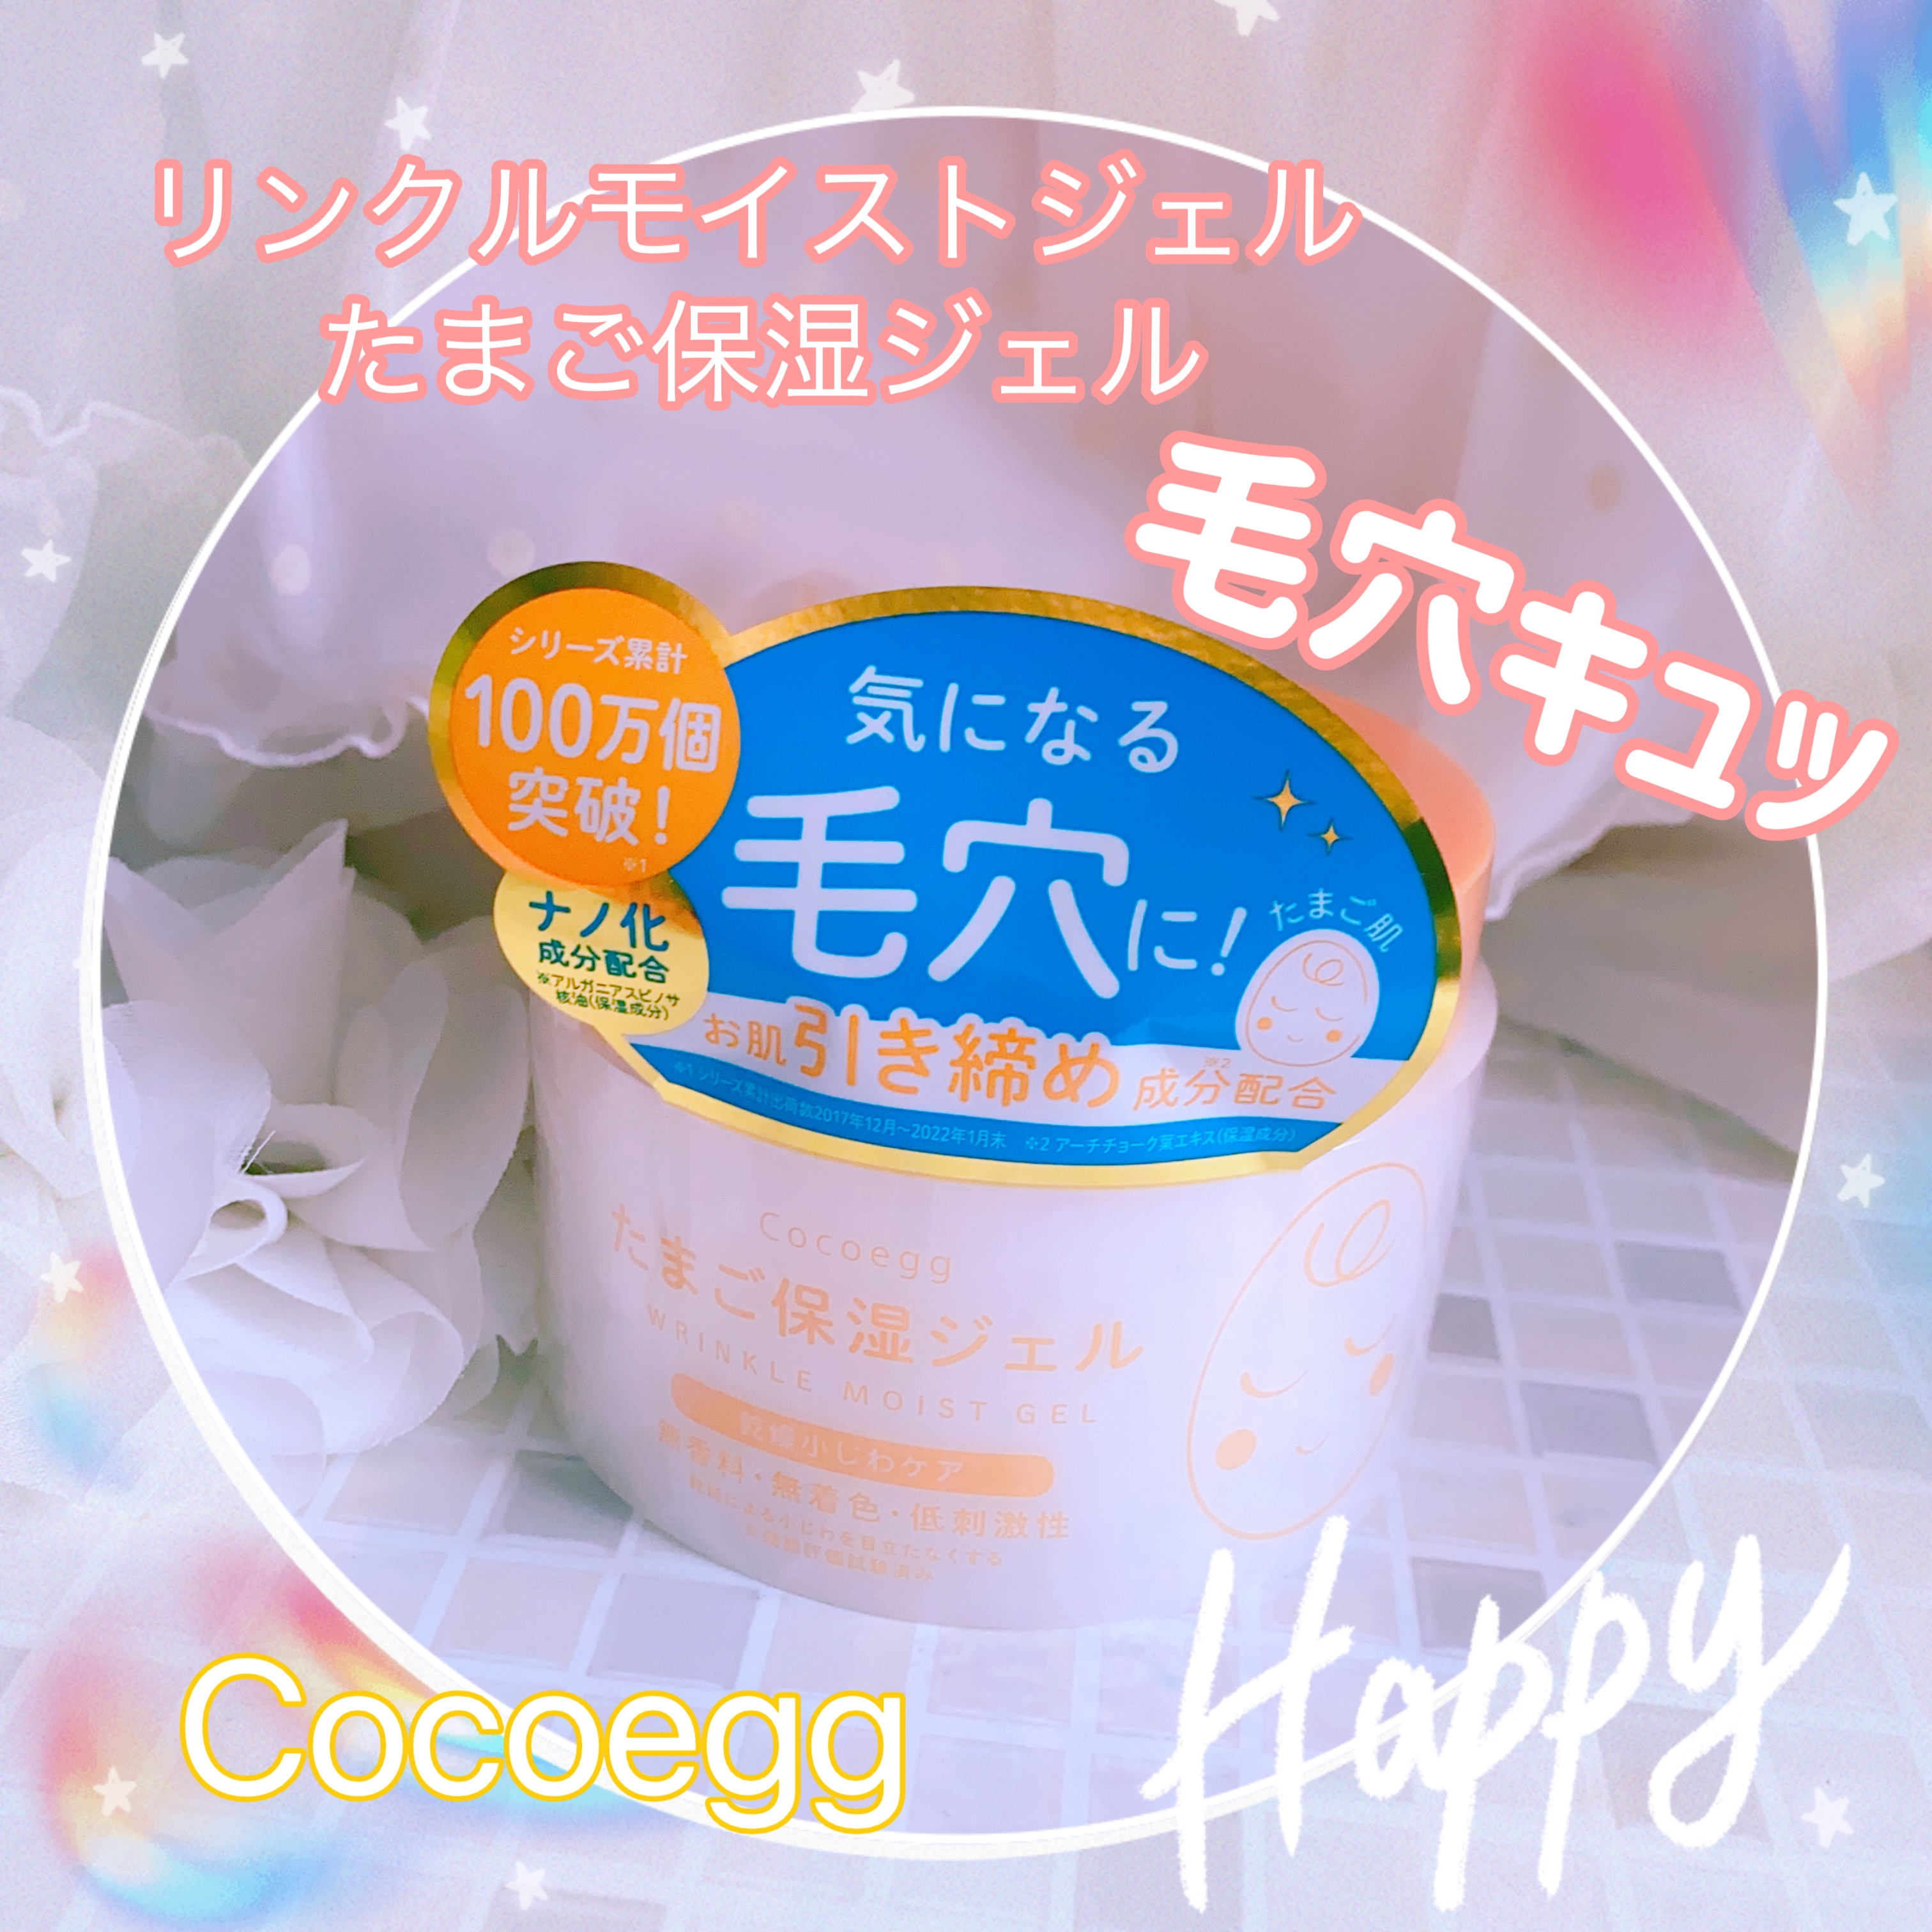 Cocoegg(ココエッグ) リンクルモイストジェル たまご保湿ジェルの良い点・メリットに関する珈琲豆♡さんの口コミ画像3